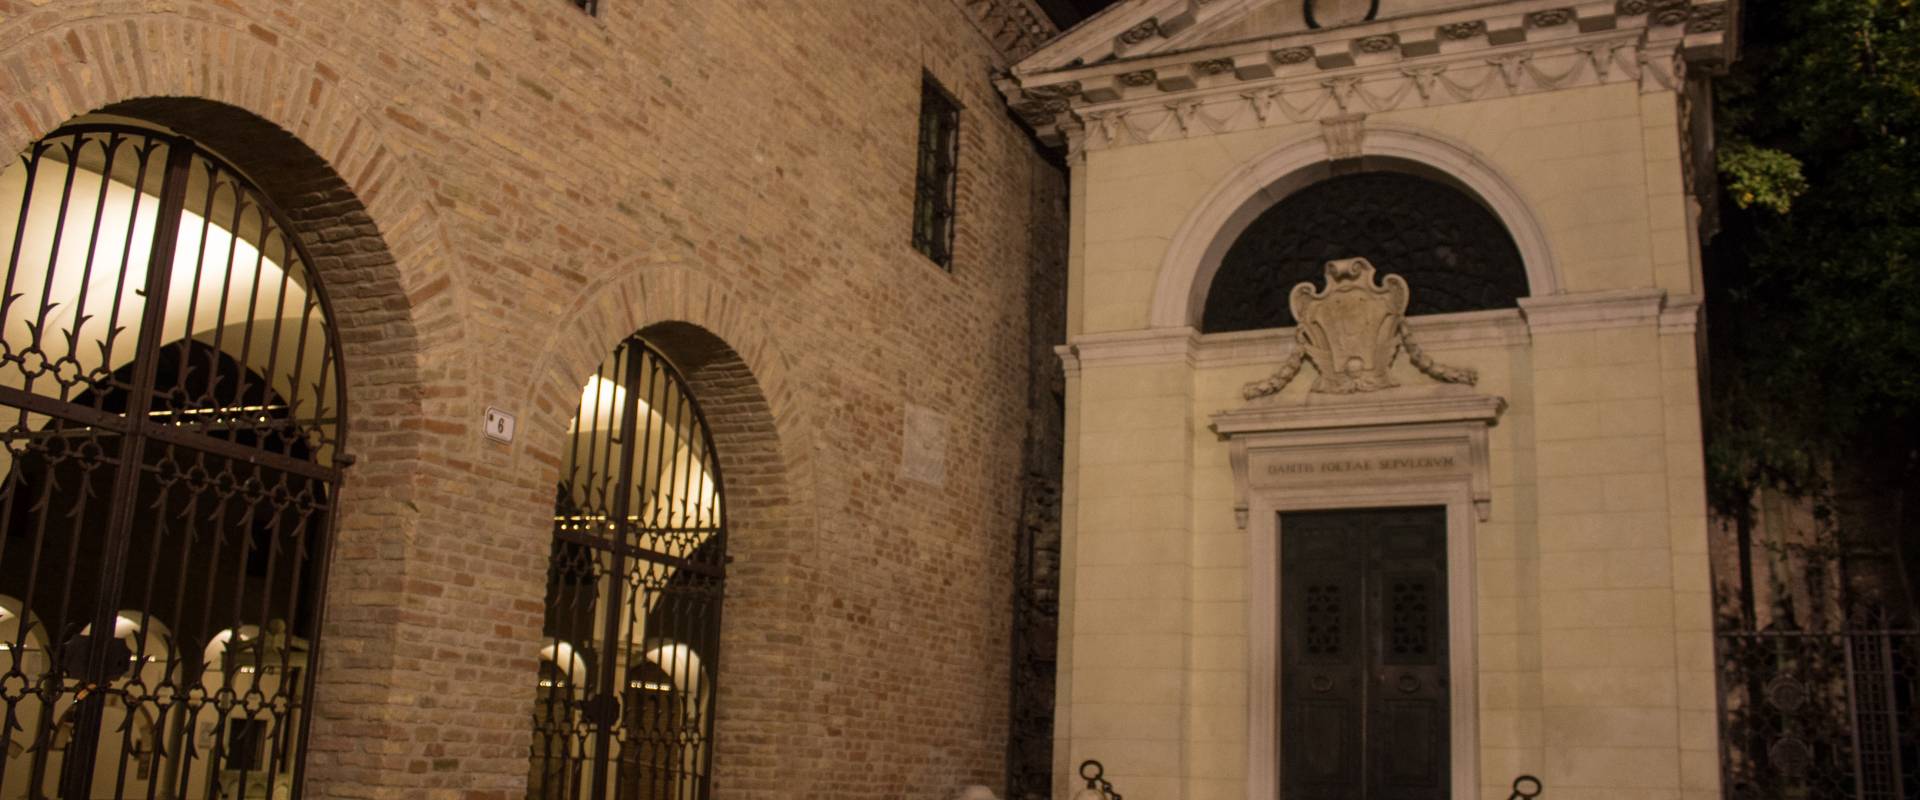 Tomba di Dante e ingresso a Chiostro Francescano foto di Matt.giocoliere